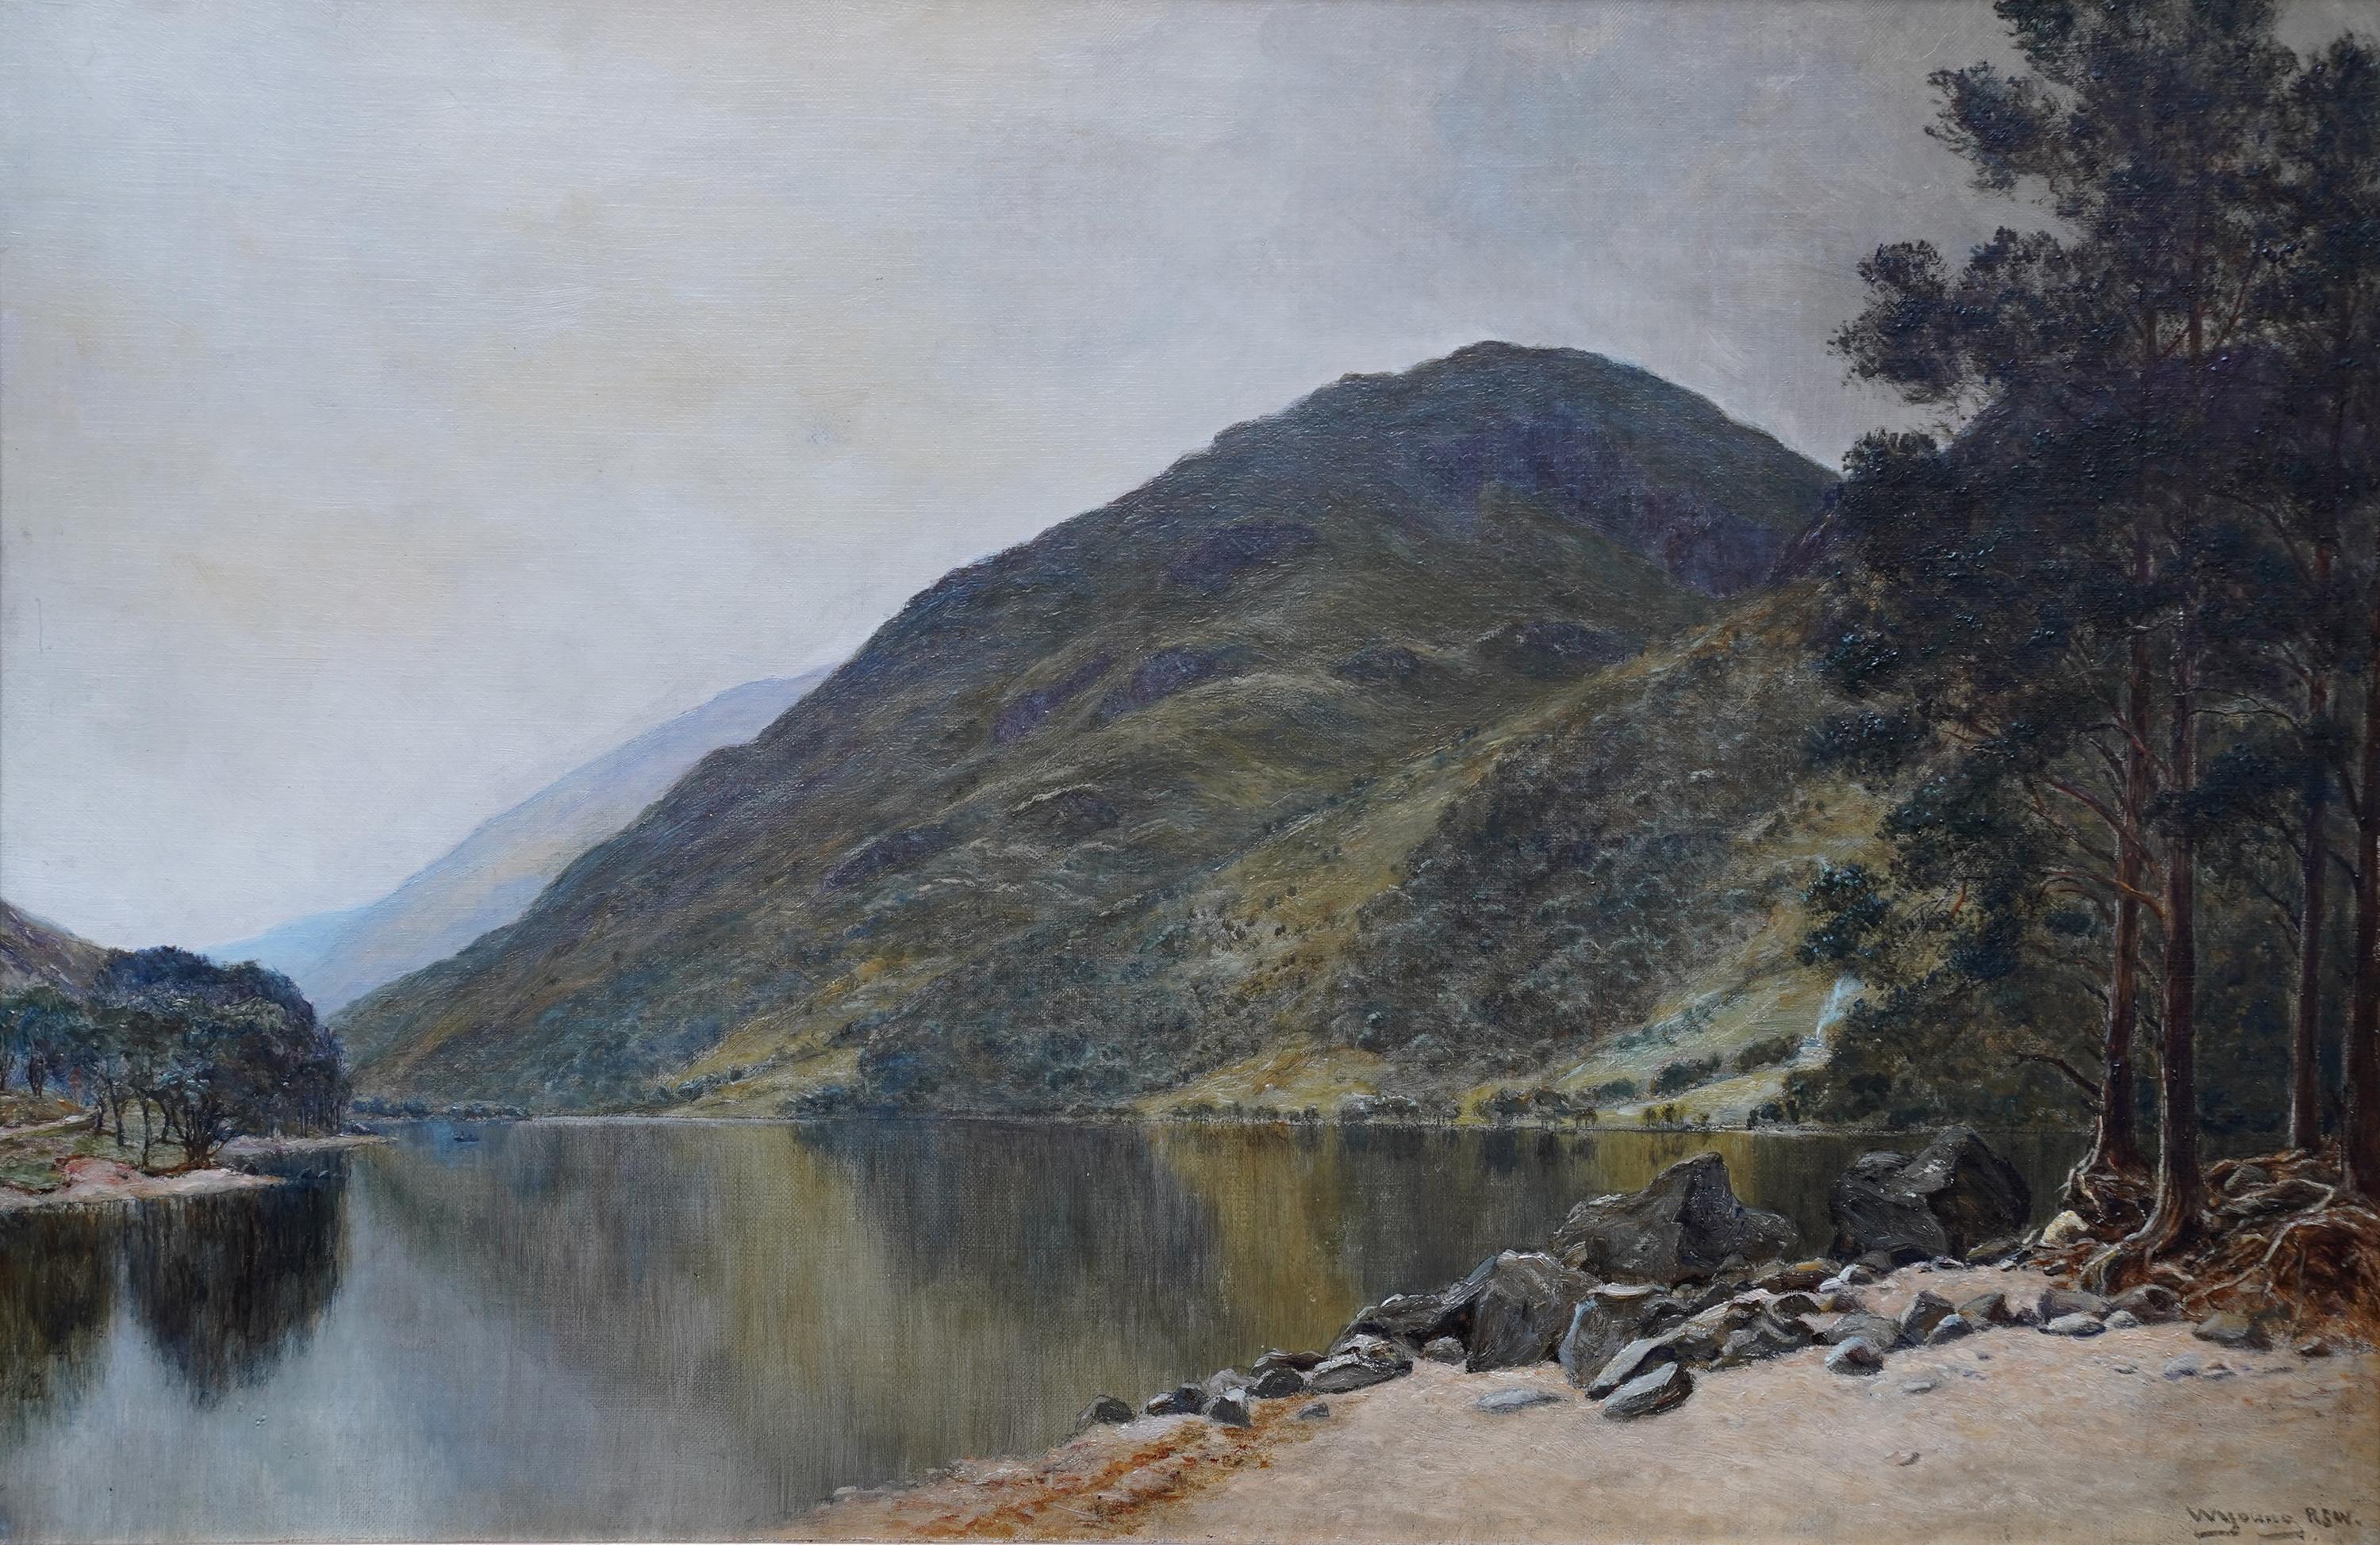 Loch Eck, Schottland – schottisches edwardianisches Ölgemälde  – Painting von William Young